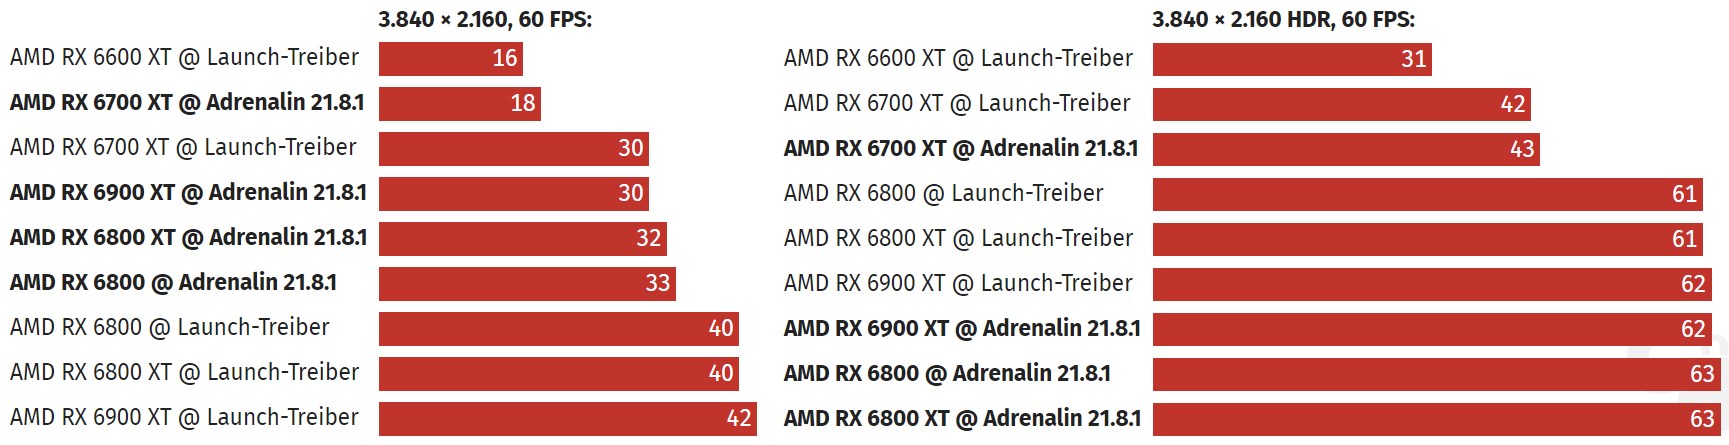 AMD'nin yeni sürücüsü RX 6000 ailesinin güç tüketimini azaltıyor